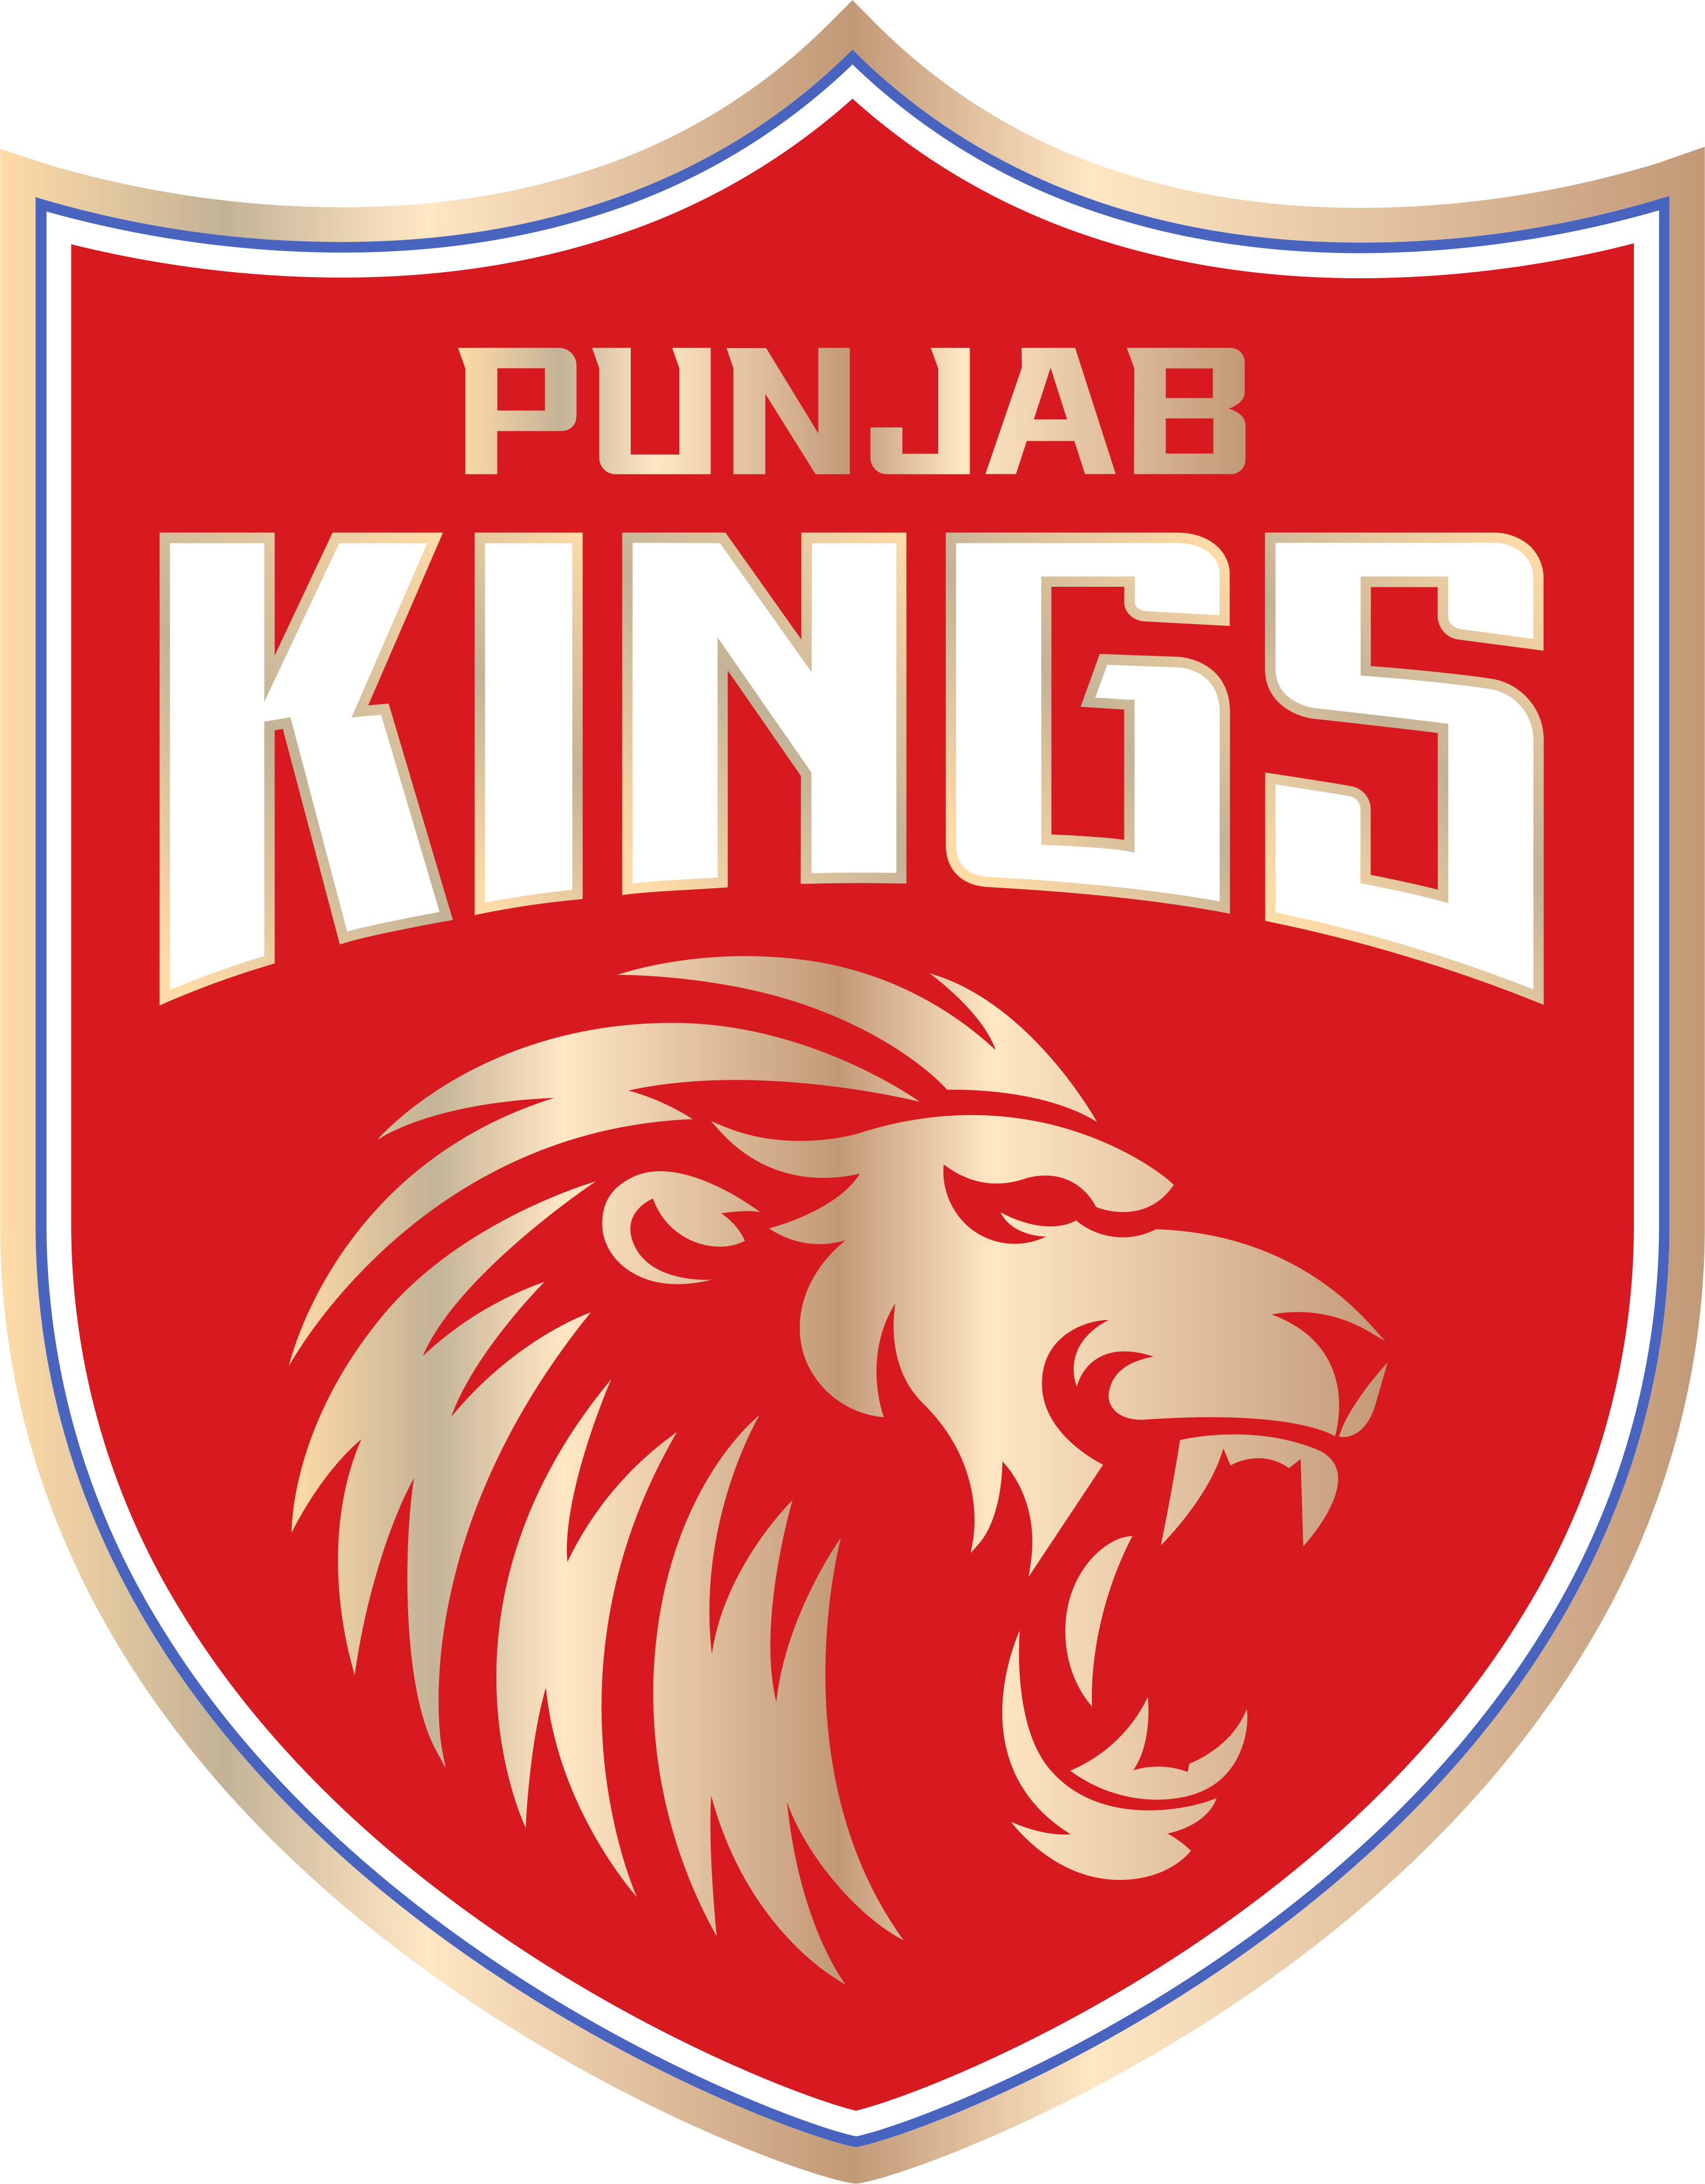 Punjab Kings Brand Logo